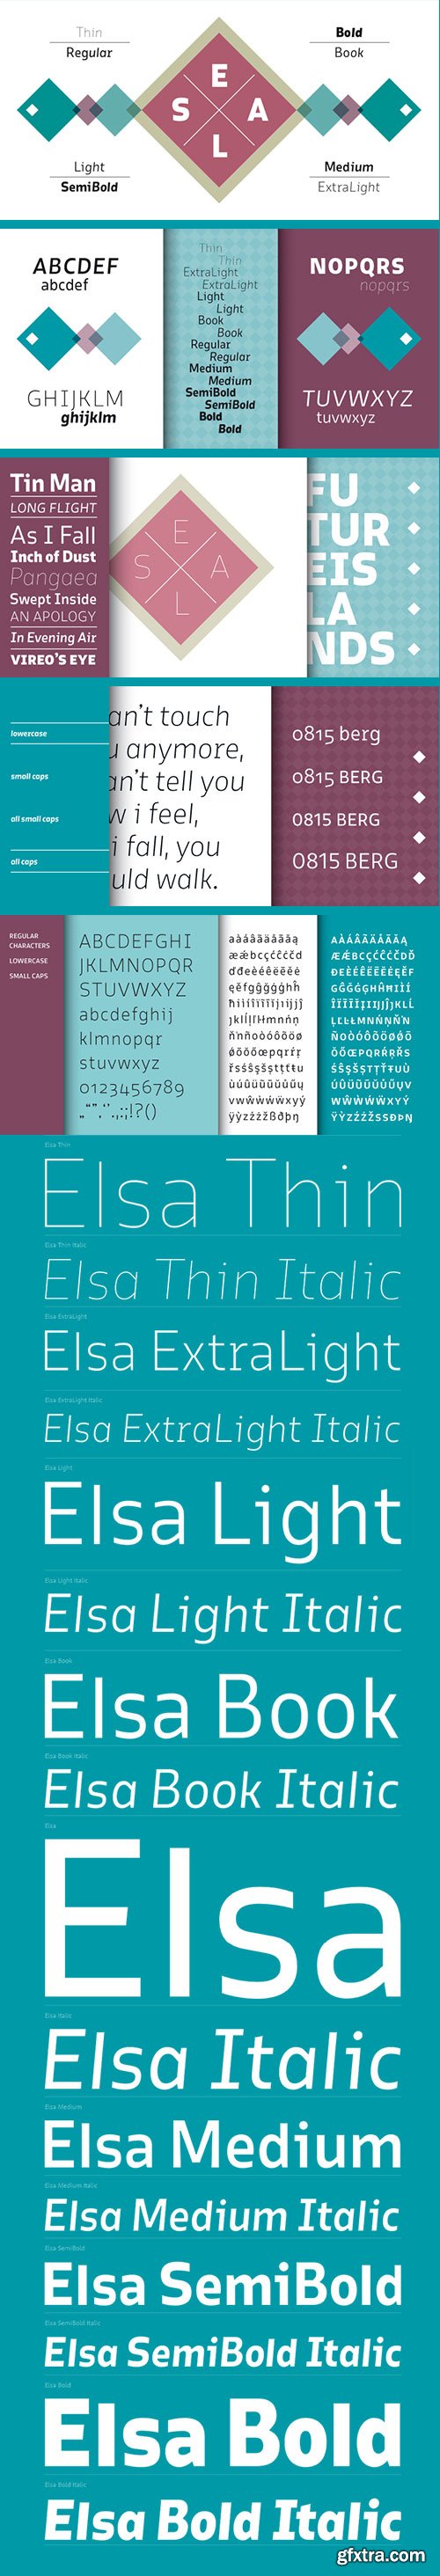 Elsa - Modern Technical Sans-Serif 16xOTF $300